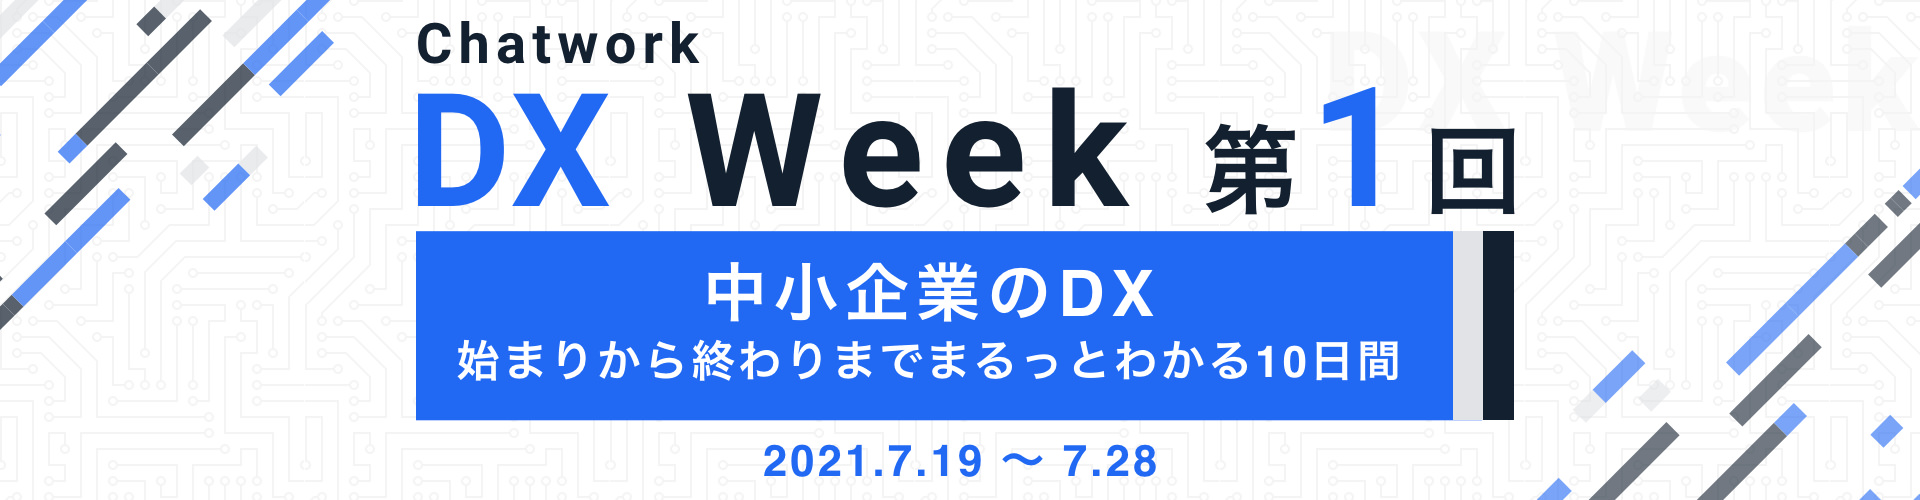 Chatwork DX Week